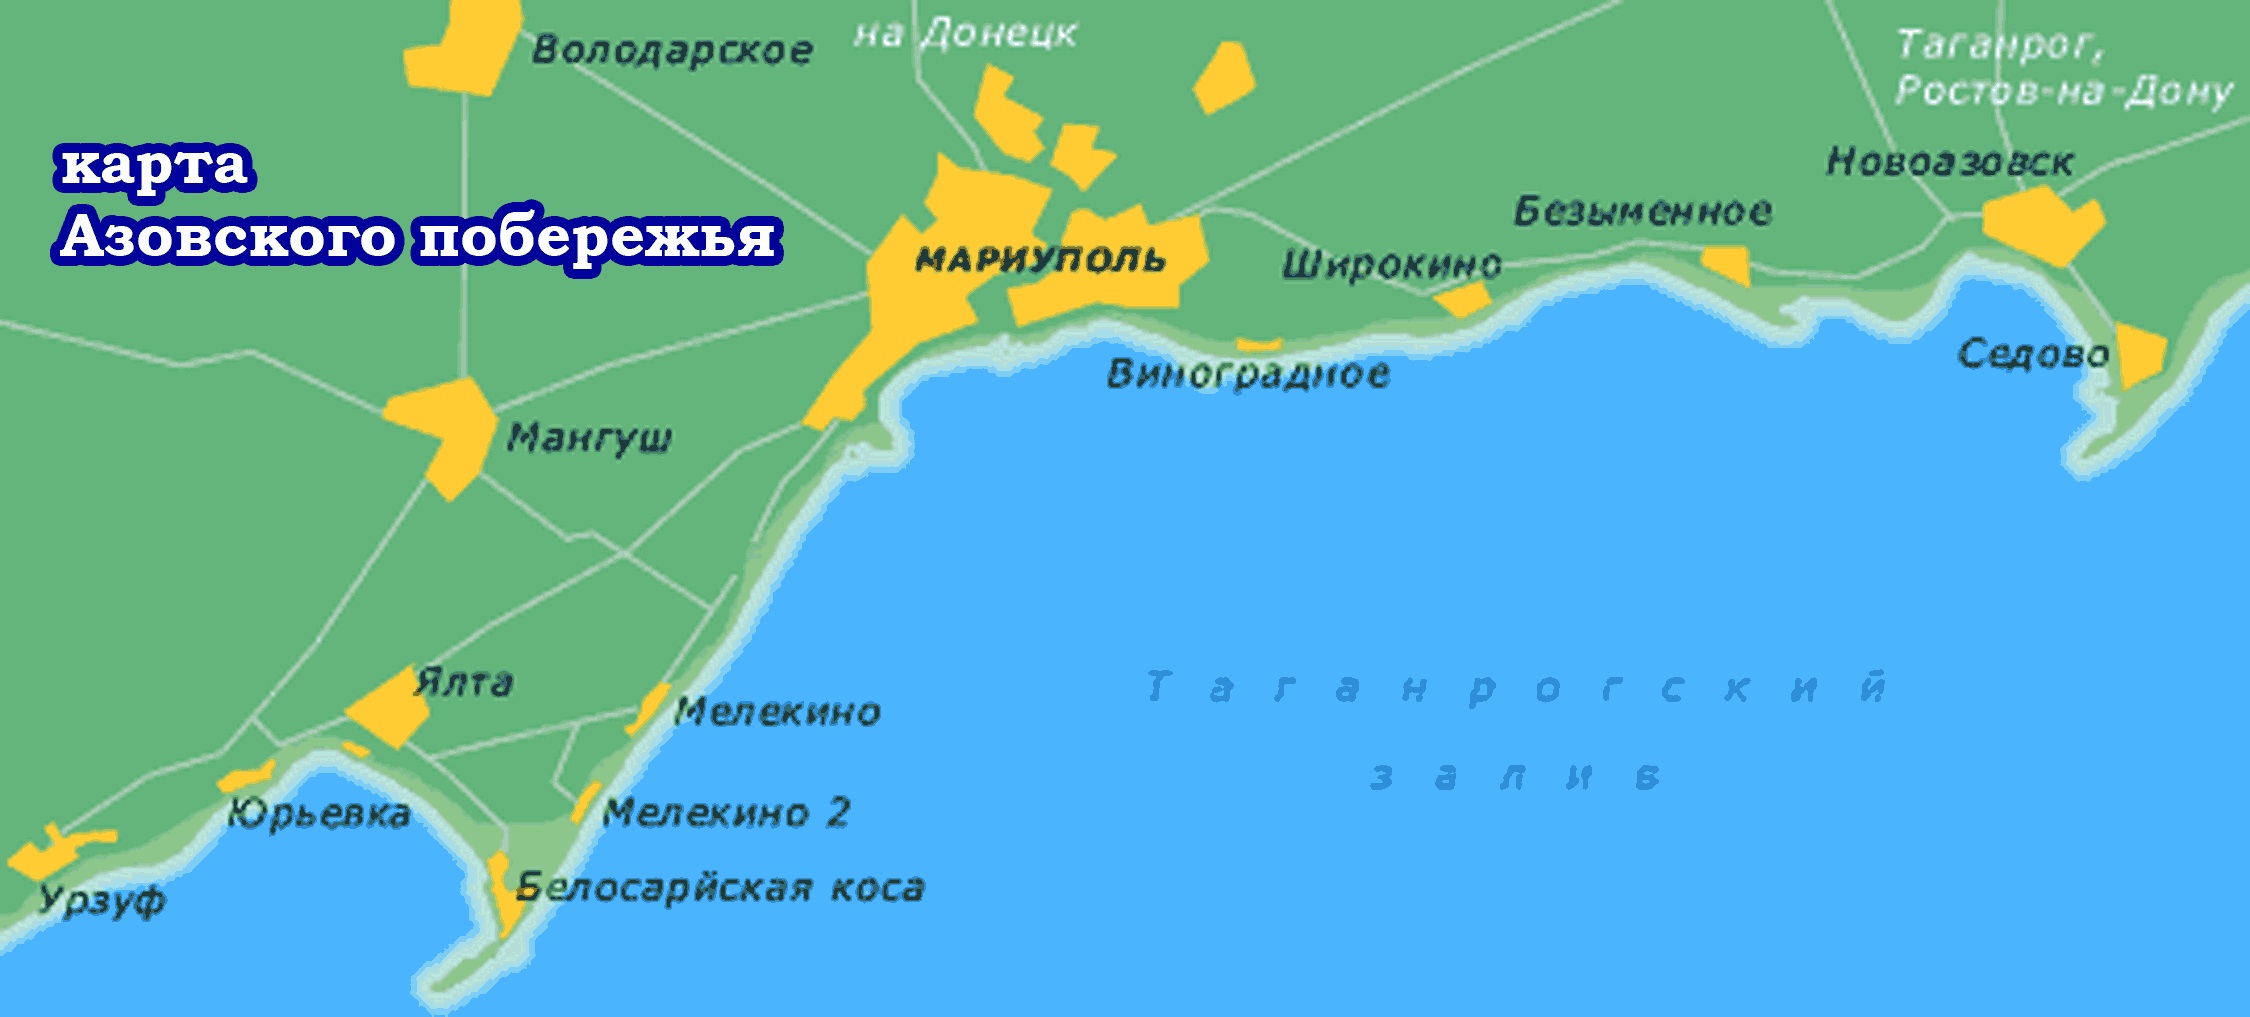 Карта Азовского моря (Россия) на русском языке, расположение на карте мирас городами, метро, центра, районов и округов